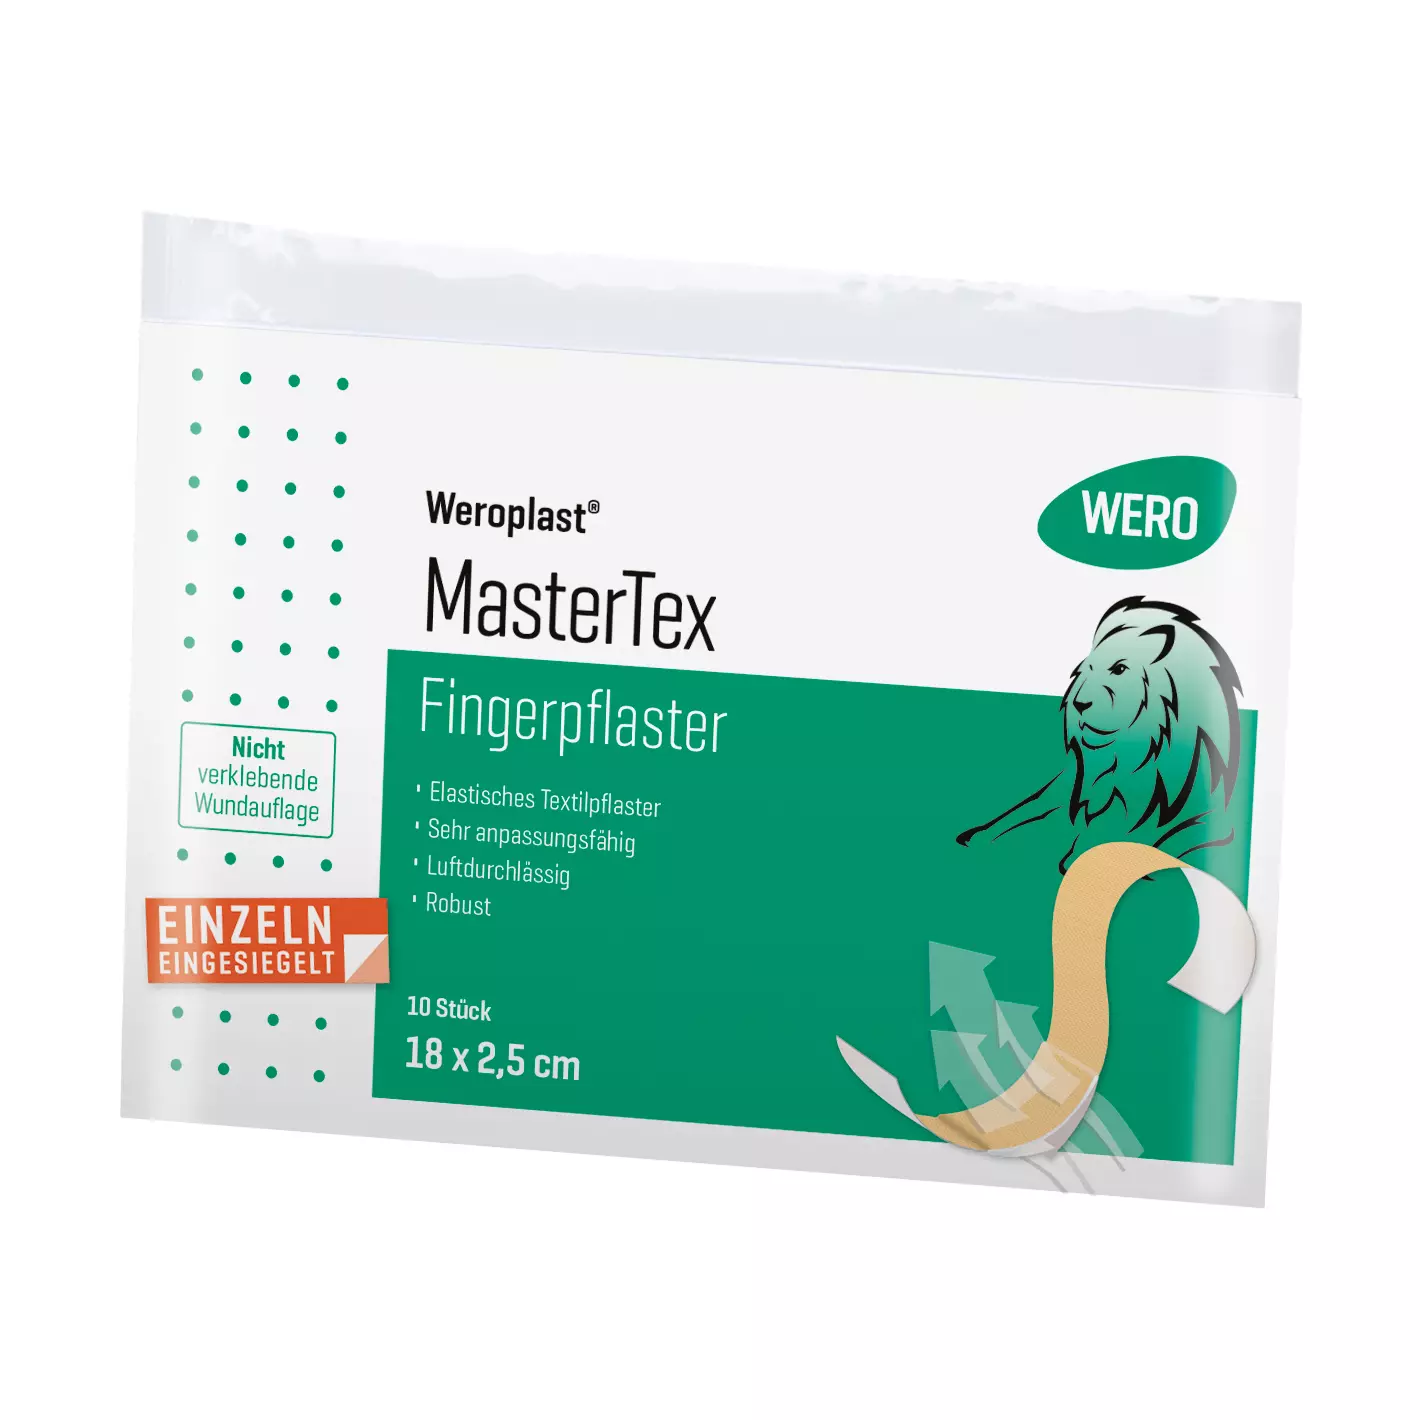 Fingerpflaster Weroplast® MasterTex - 2,5 cm, 10 Stk